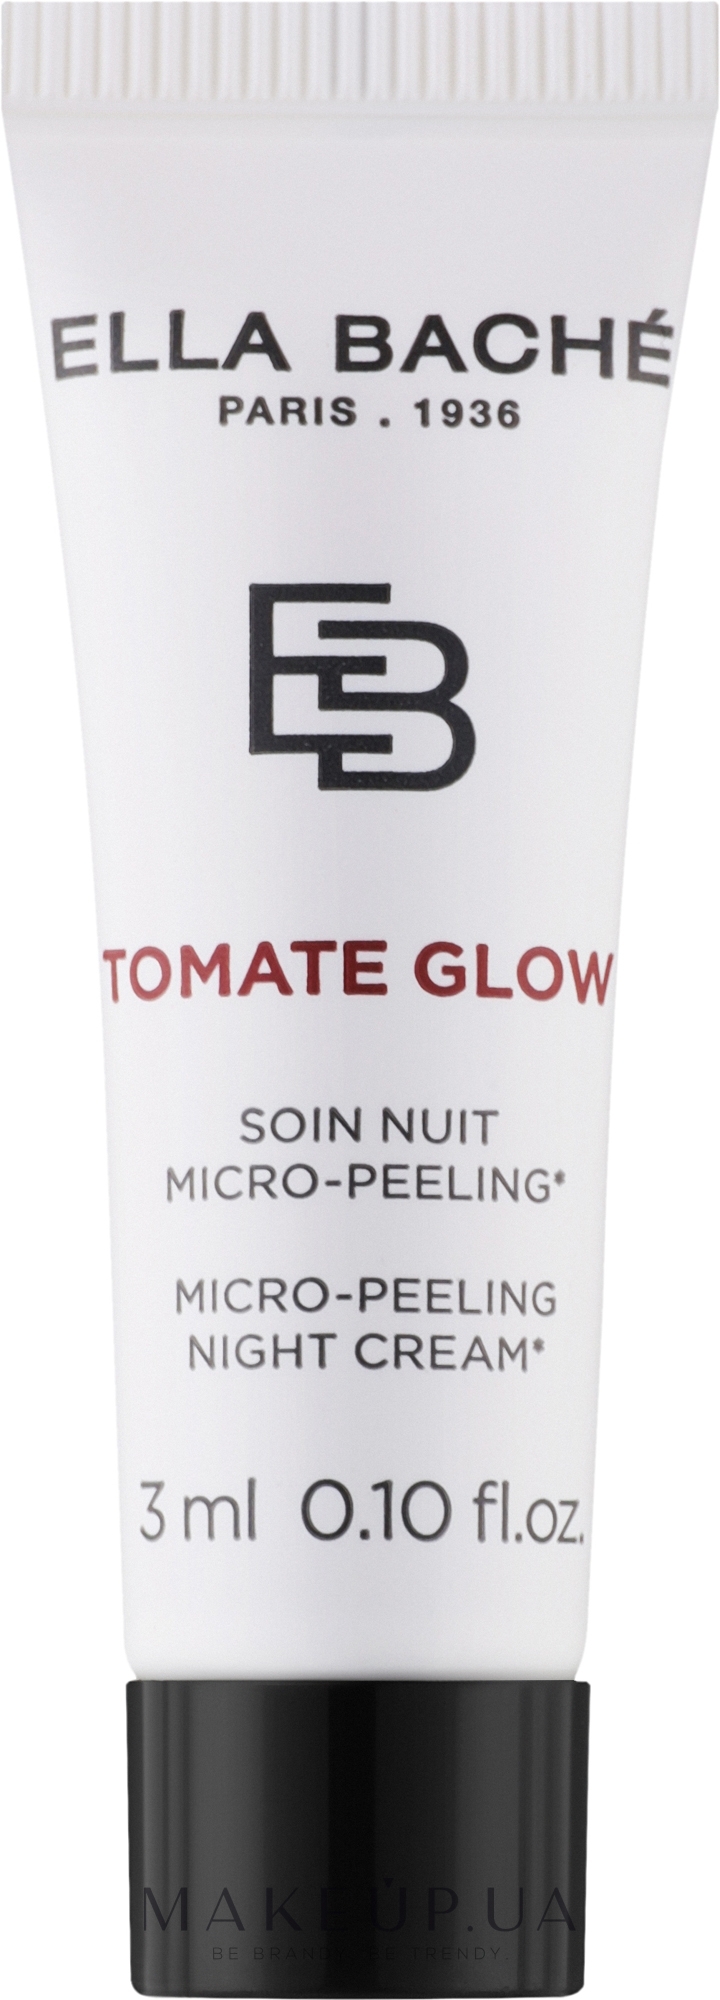 Мікро-пілінг нічний крем - Ella Bache Tomate Glow Micro-Peeling Night Cream (пробник) — фото 3ml